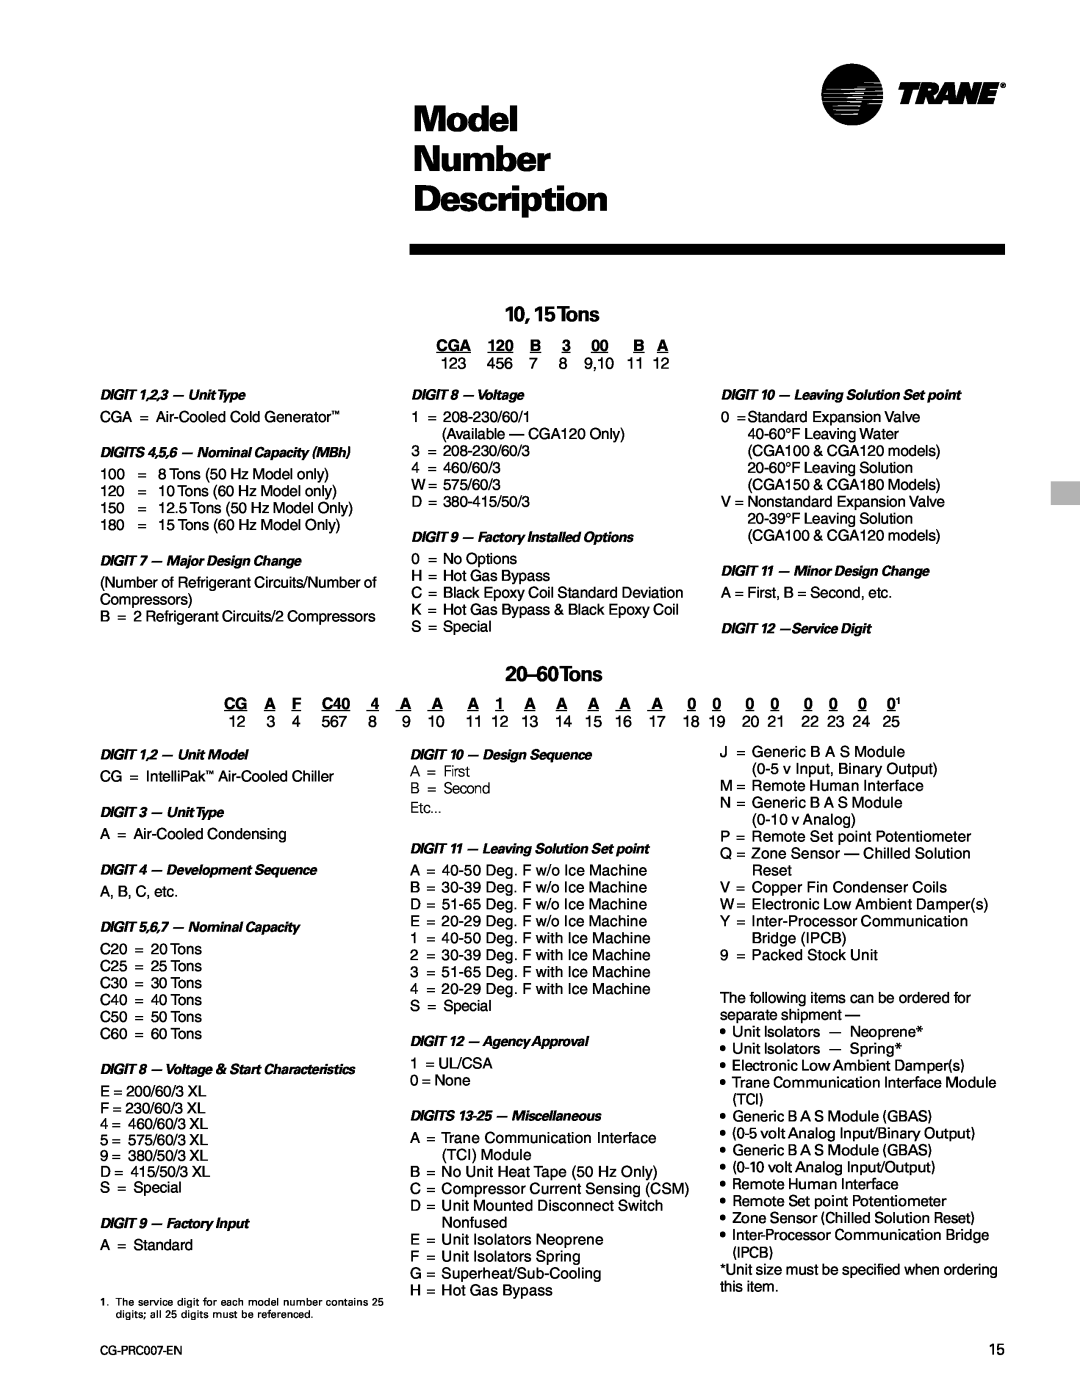 Trane CG-PRC007-EN manual Model Number Description, 10, 15Tons, 20-60Tons, CG A F C404, A A 1 A A AA A 0 0 0 